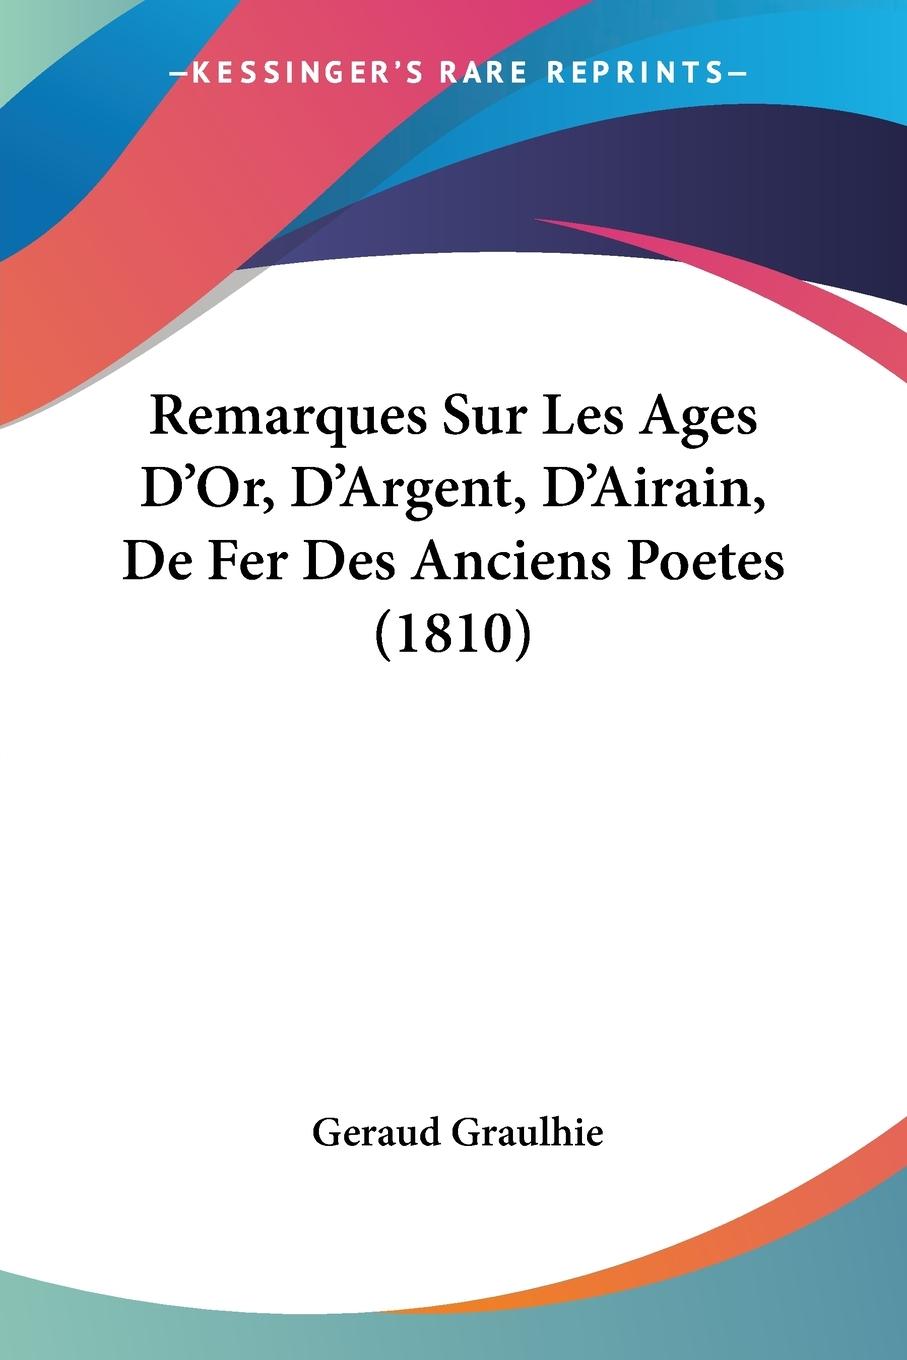 Remarques Sur Les Ages D Or, D Argent, D Airain, De Fer Des Anciens Poetes (1810) - Graulhie, Geraud